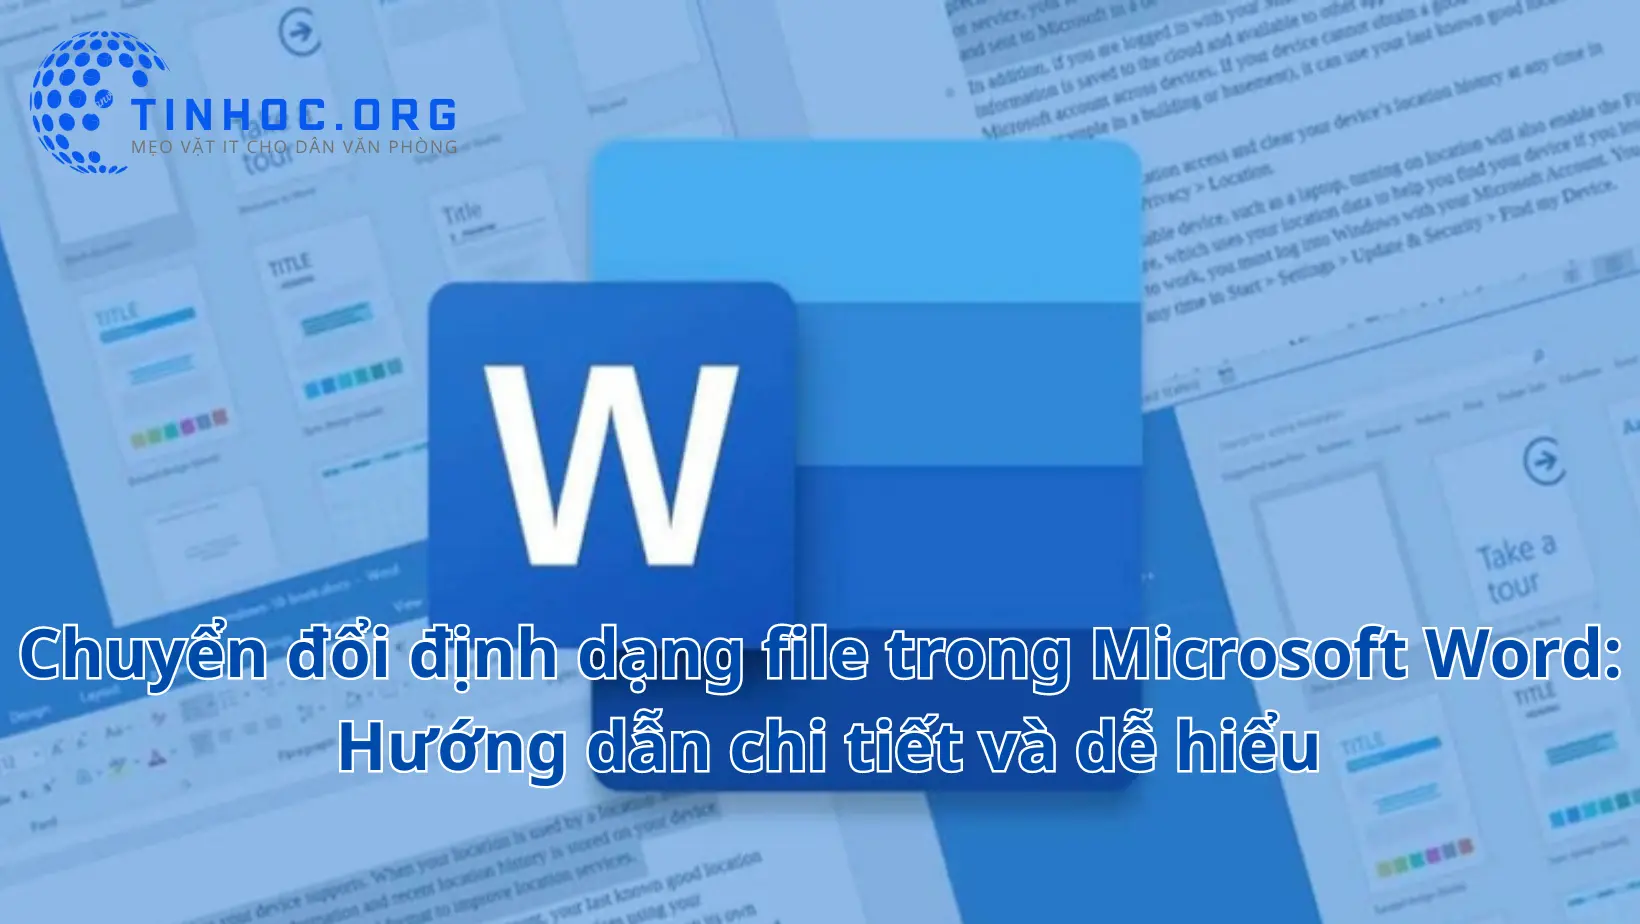 Hướng dẫn cách chuyển đổi định dạng file trong Microsoft Word, bao gồm các bước cơ bản và các mẹo và thủ thuật hữu ích.